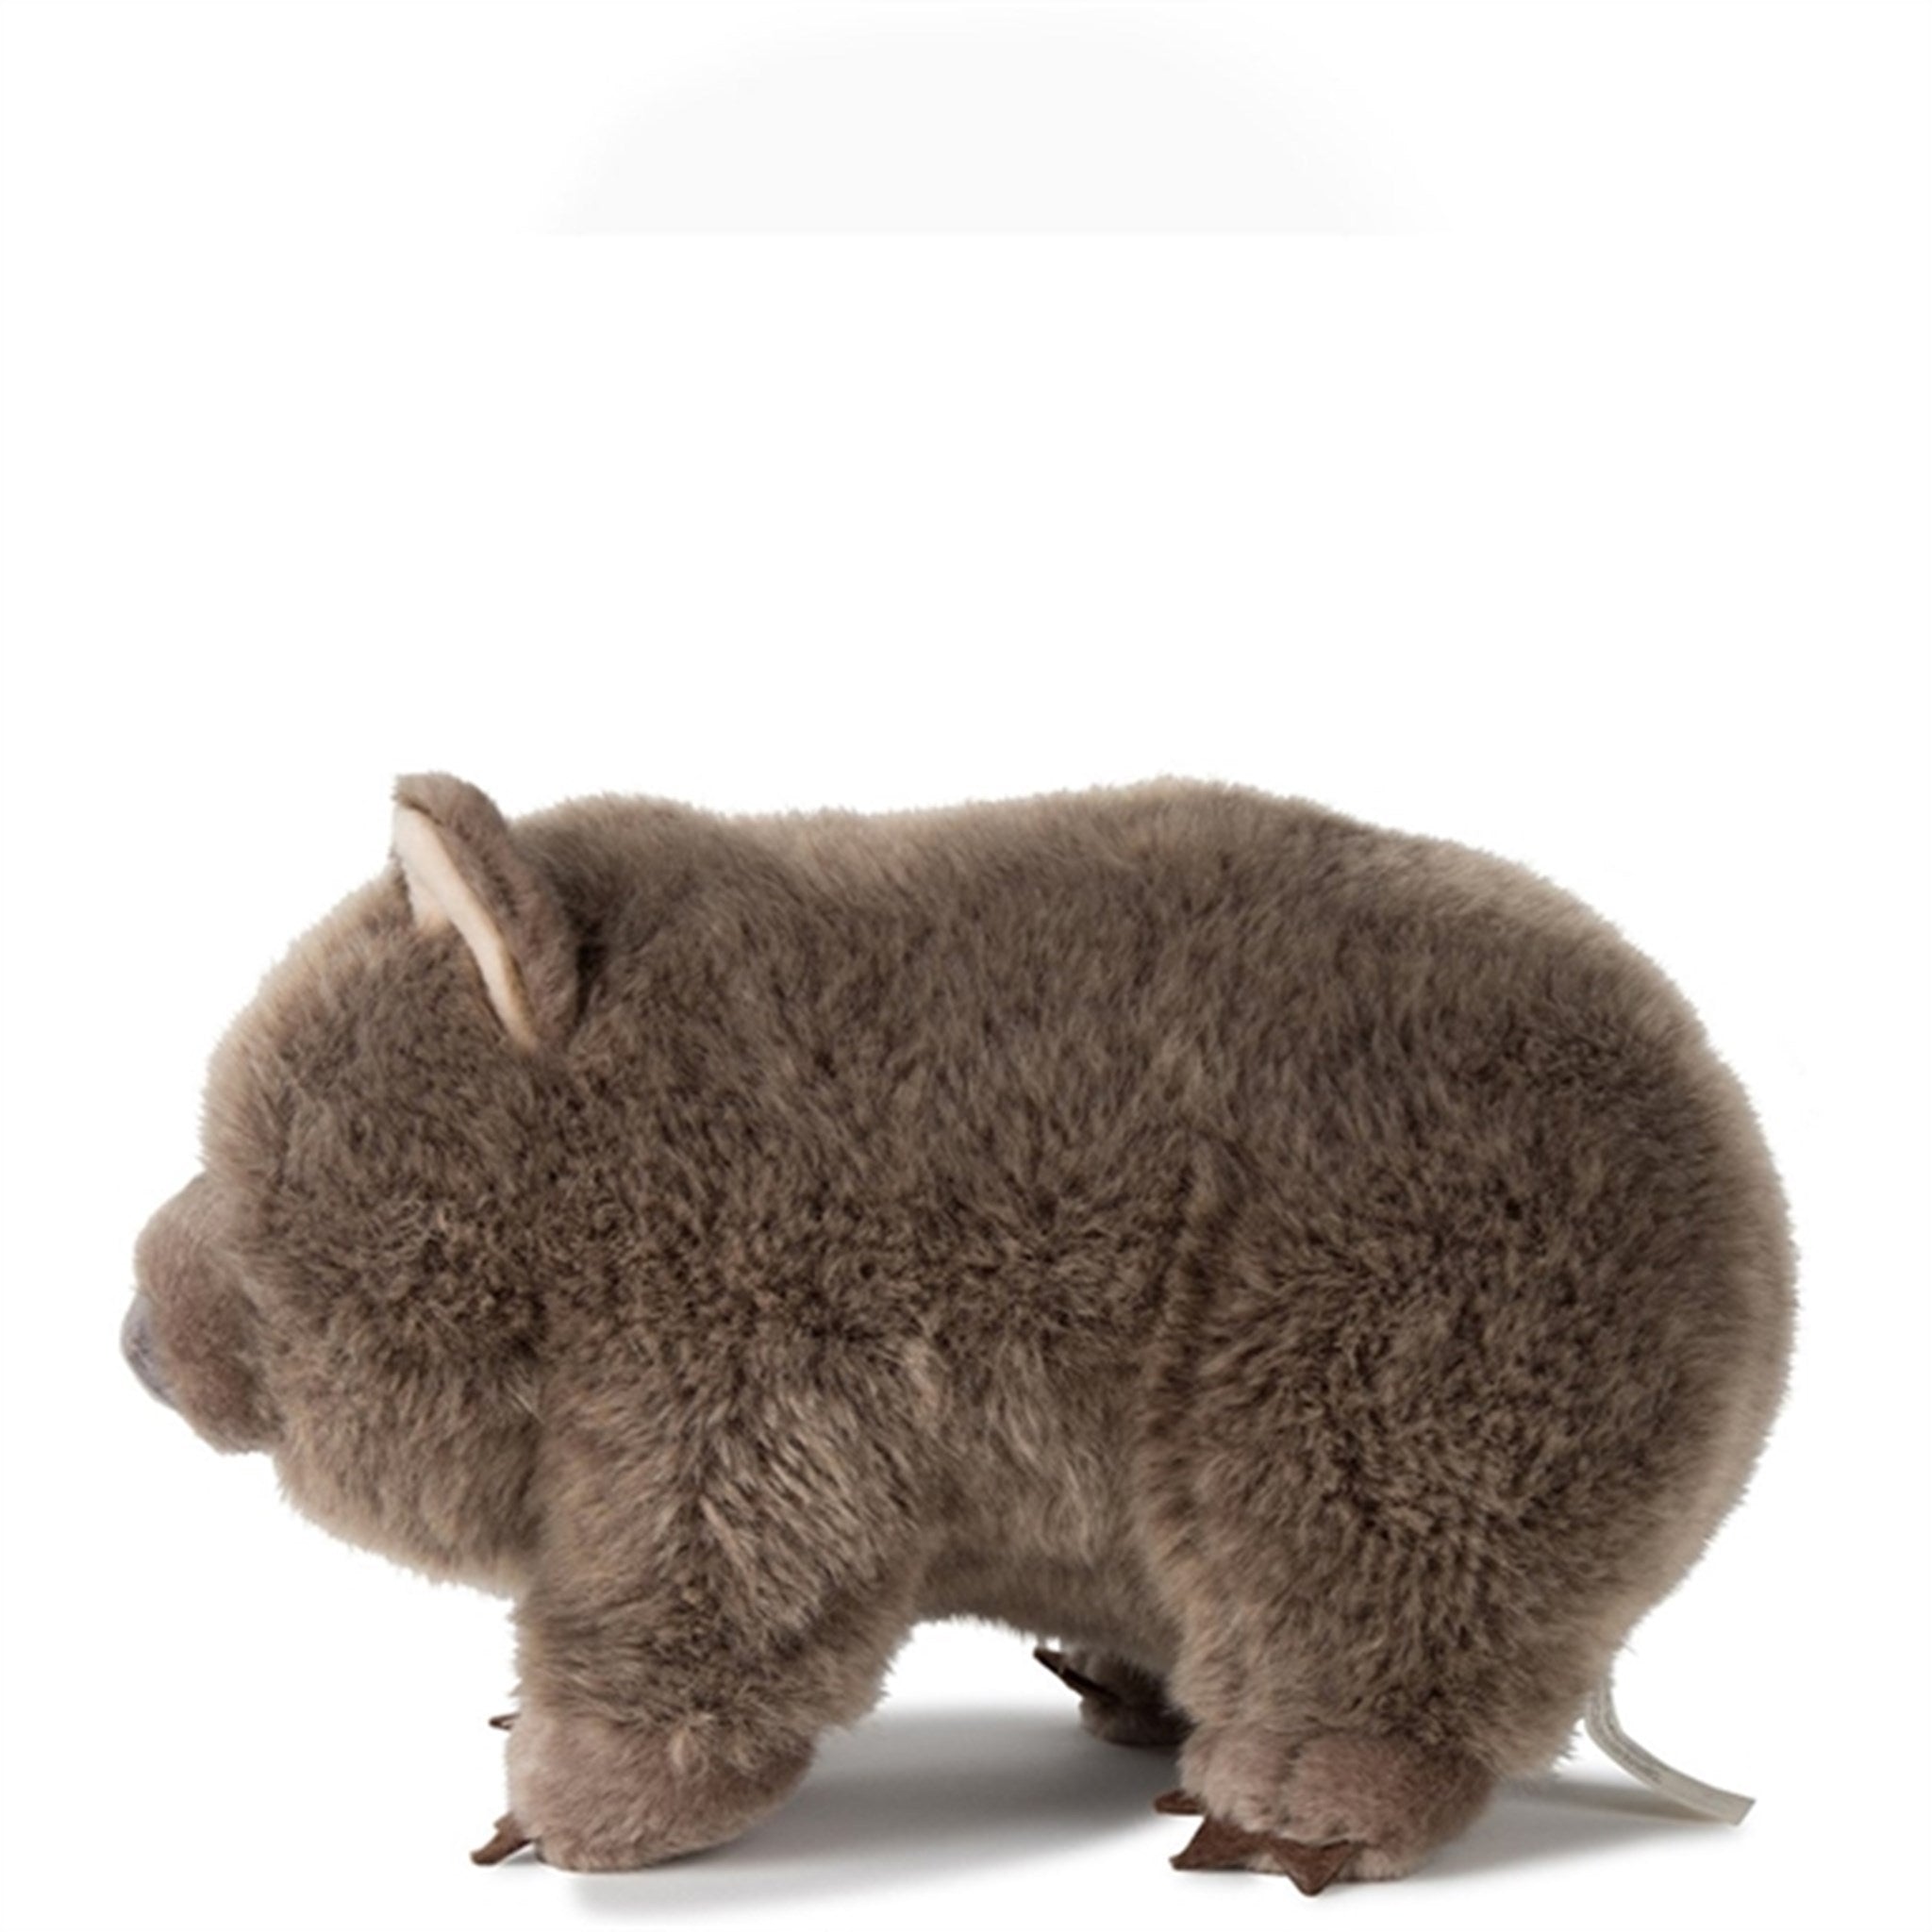 Bon Ton Toys WWF Plush Wombat 28 cm 2